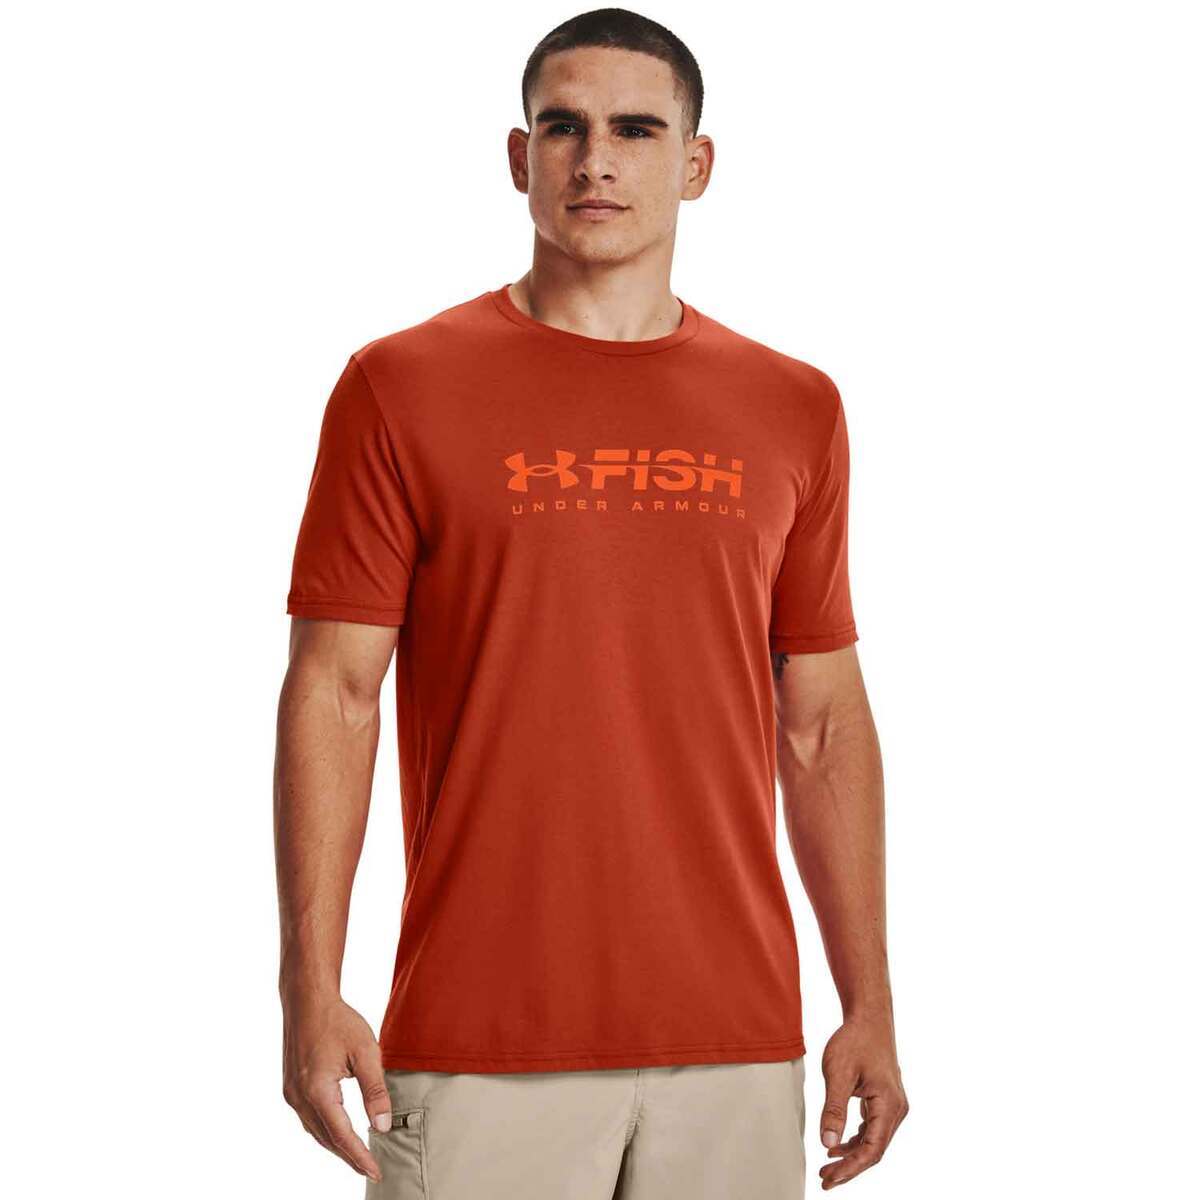 Under Armour Men's Fish Strike T-Shirt - Orange, XXL